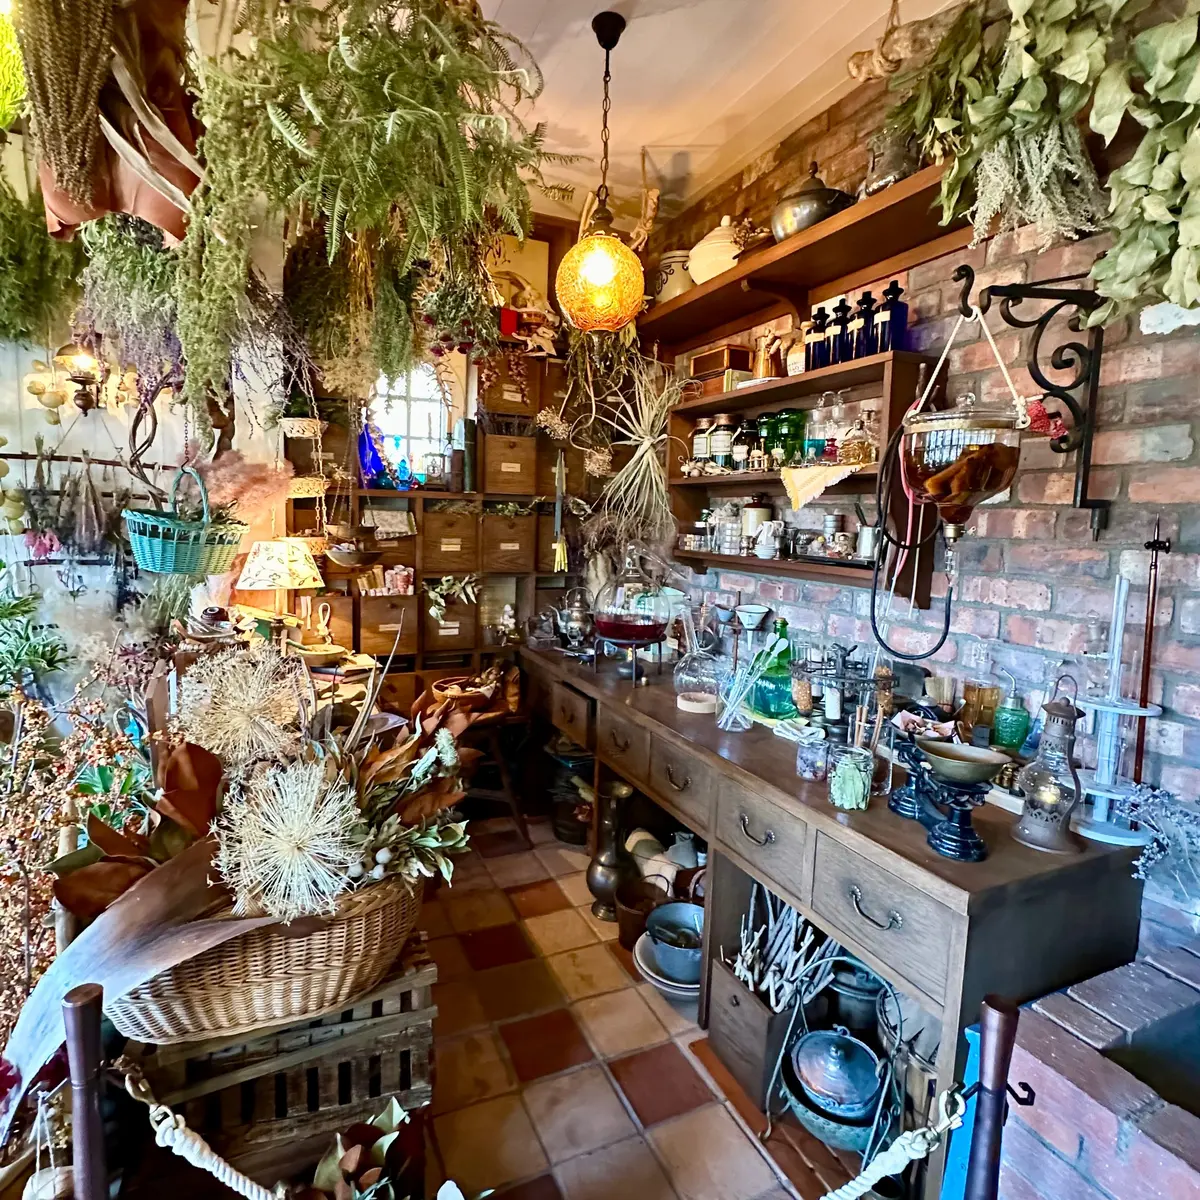 『ジブリパーク』「魔女の谷」の「オキノ邸」内の魔女の店 実験用キッチン